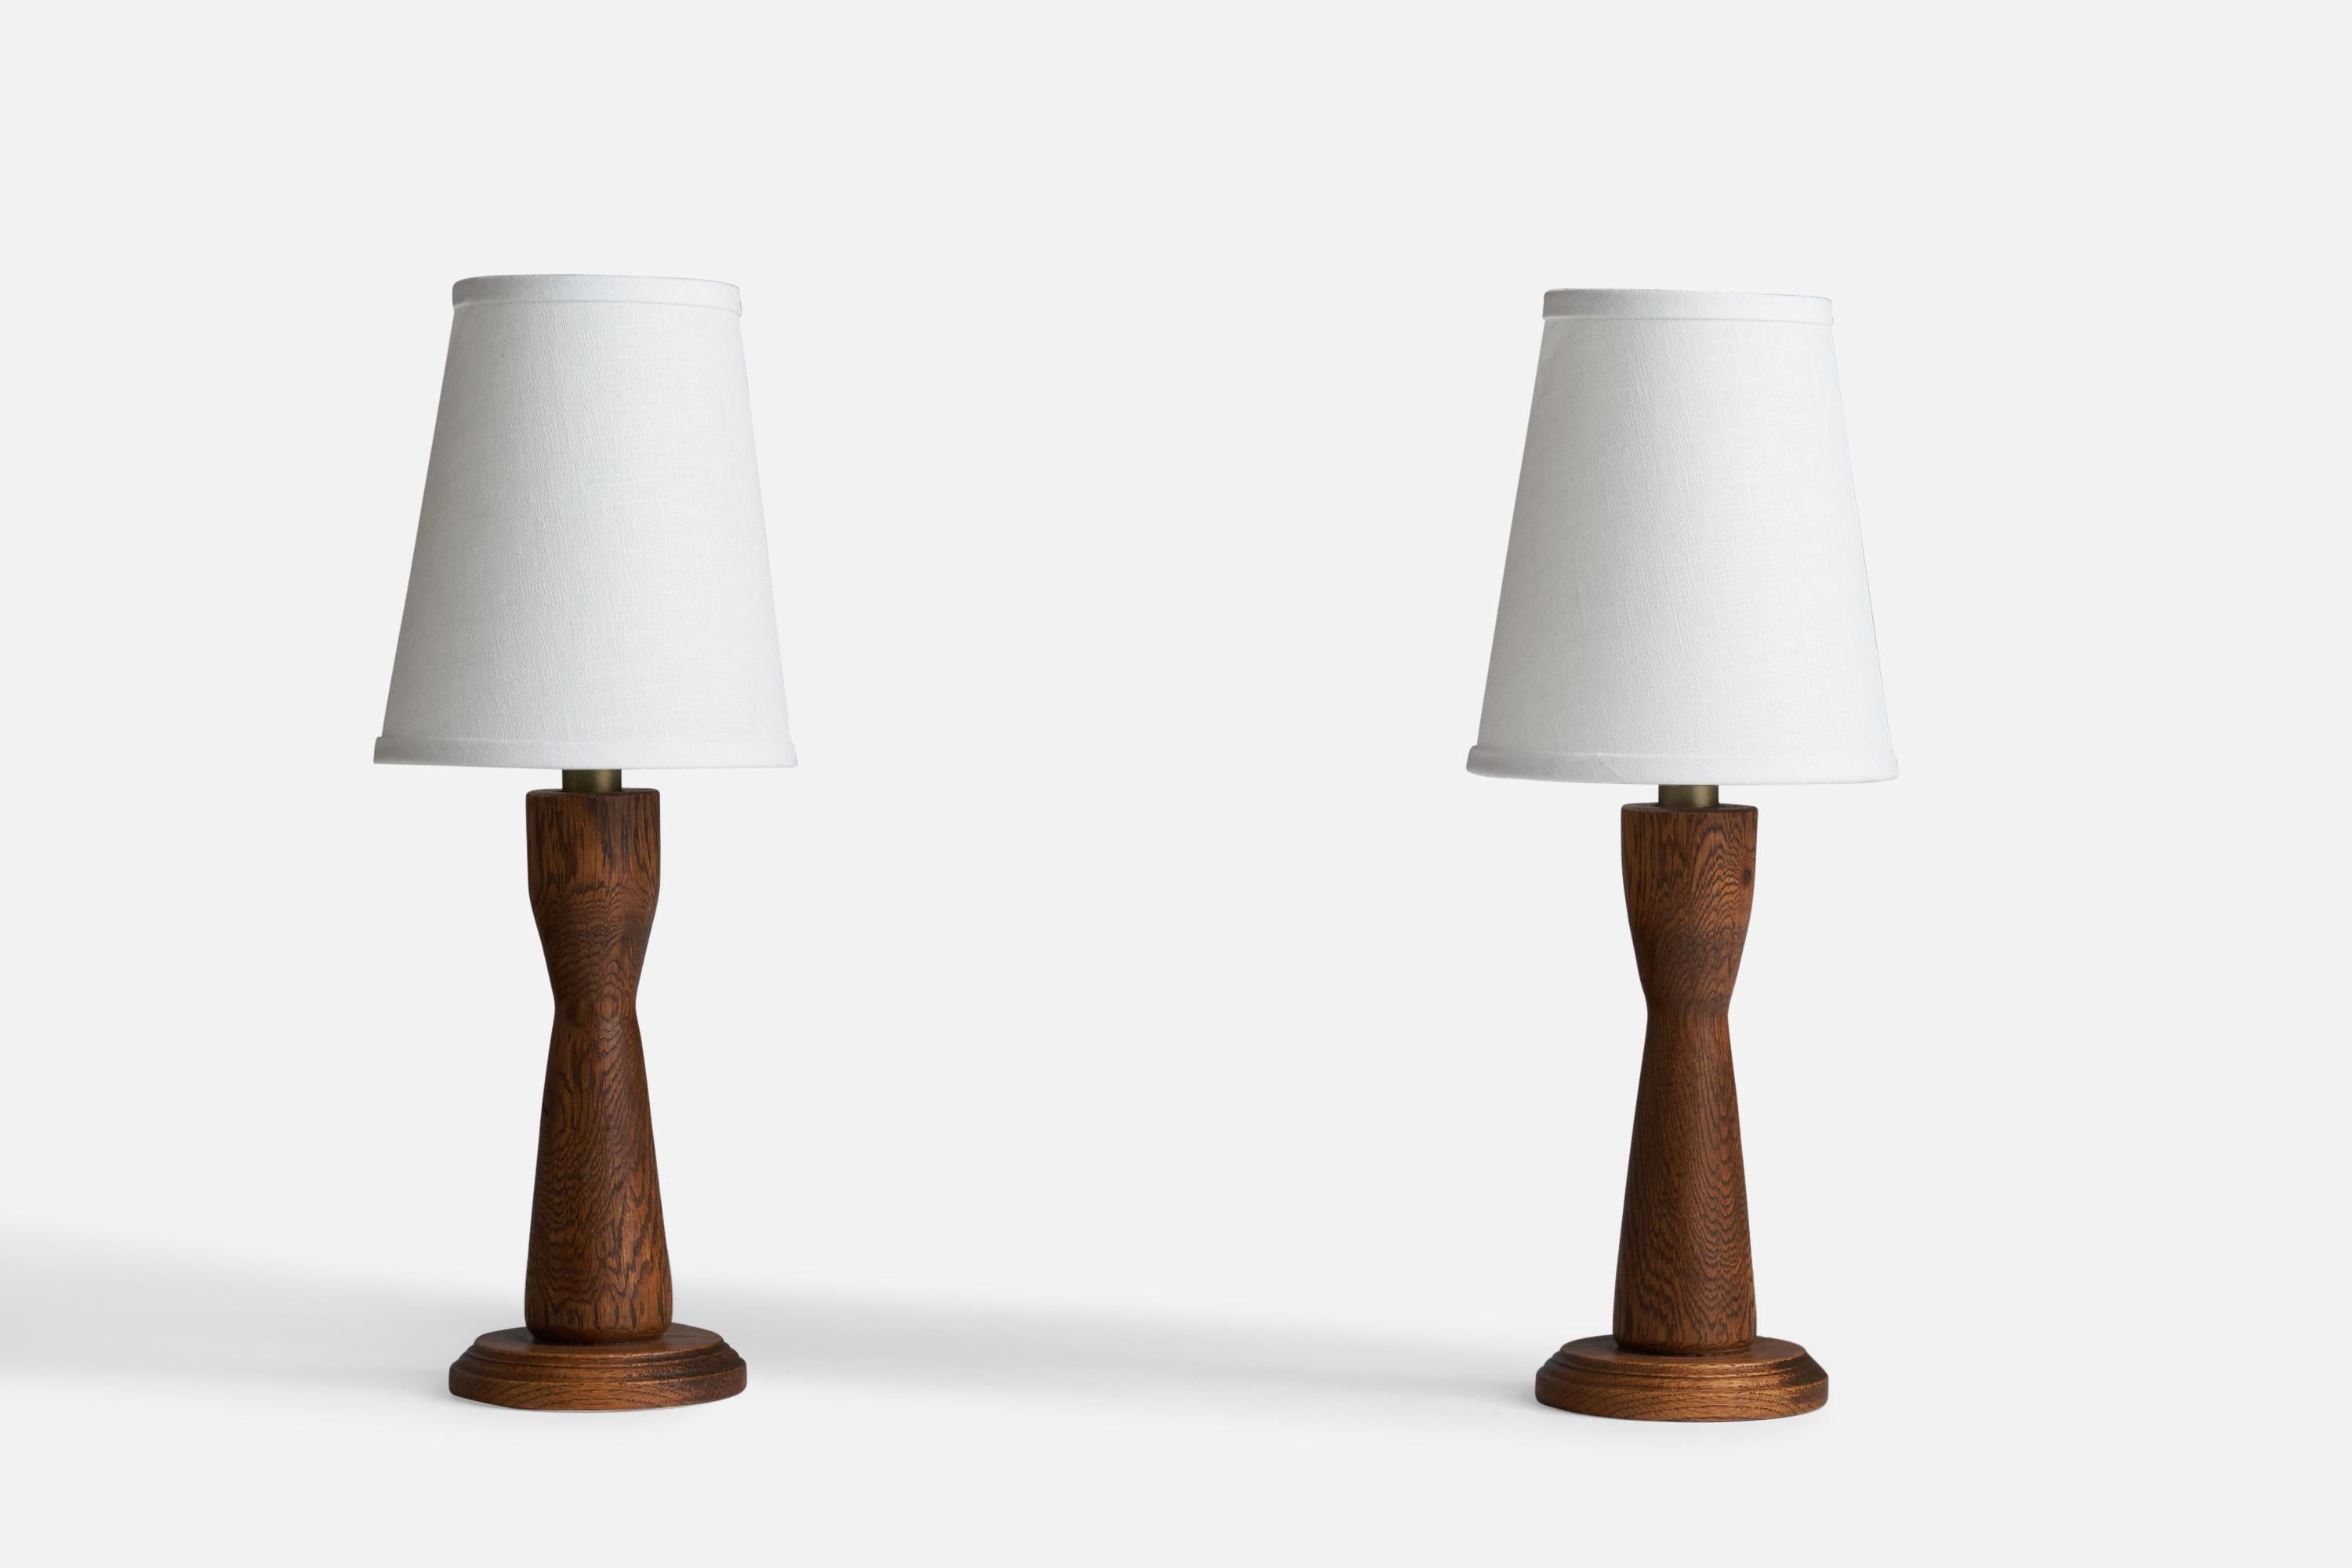 Paire de lampes de table en chêne teinté foncé et en laiton, conçues et produites aux États-Unis, années 1950.

Dimensions de la lampe (pouces) : 10.25